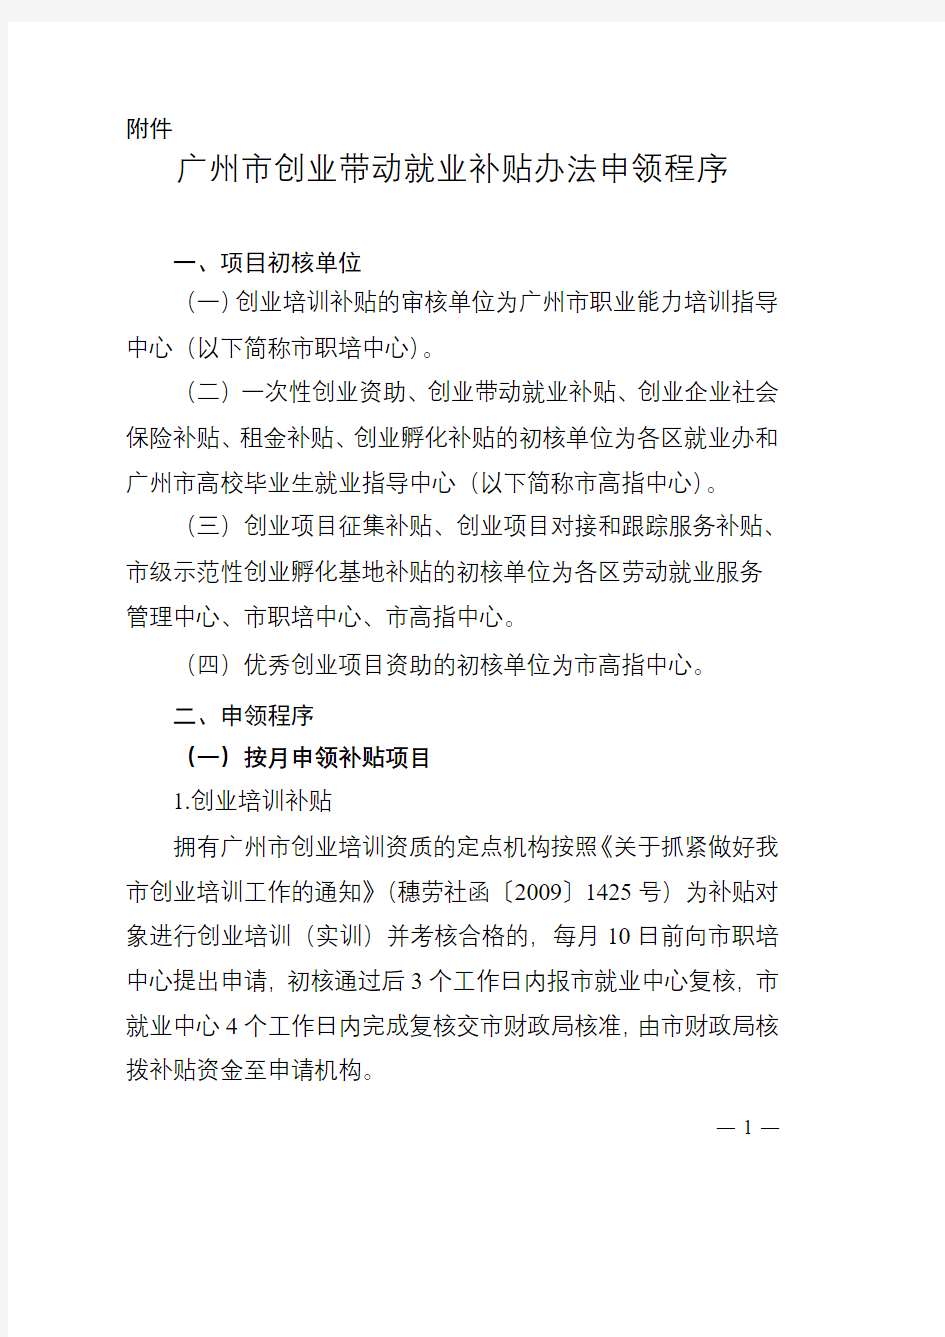 广州市创业带动就业补贴办法申领程序